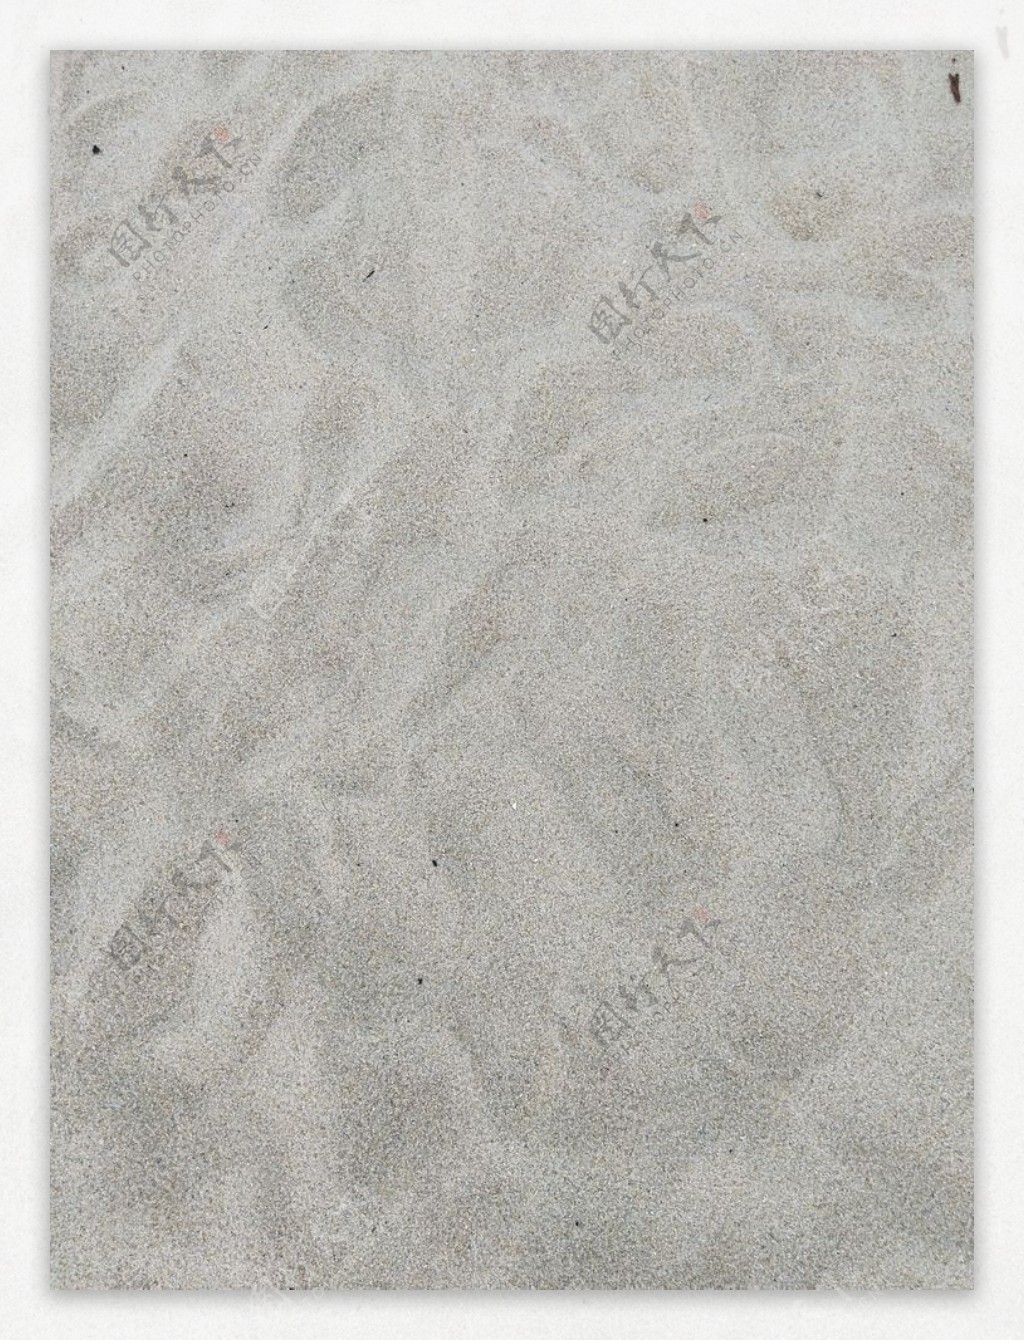 高清镜头下砂石表面的特写细腻的沙子表面凹凸不平